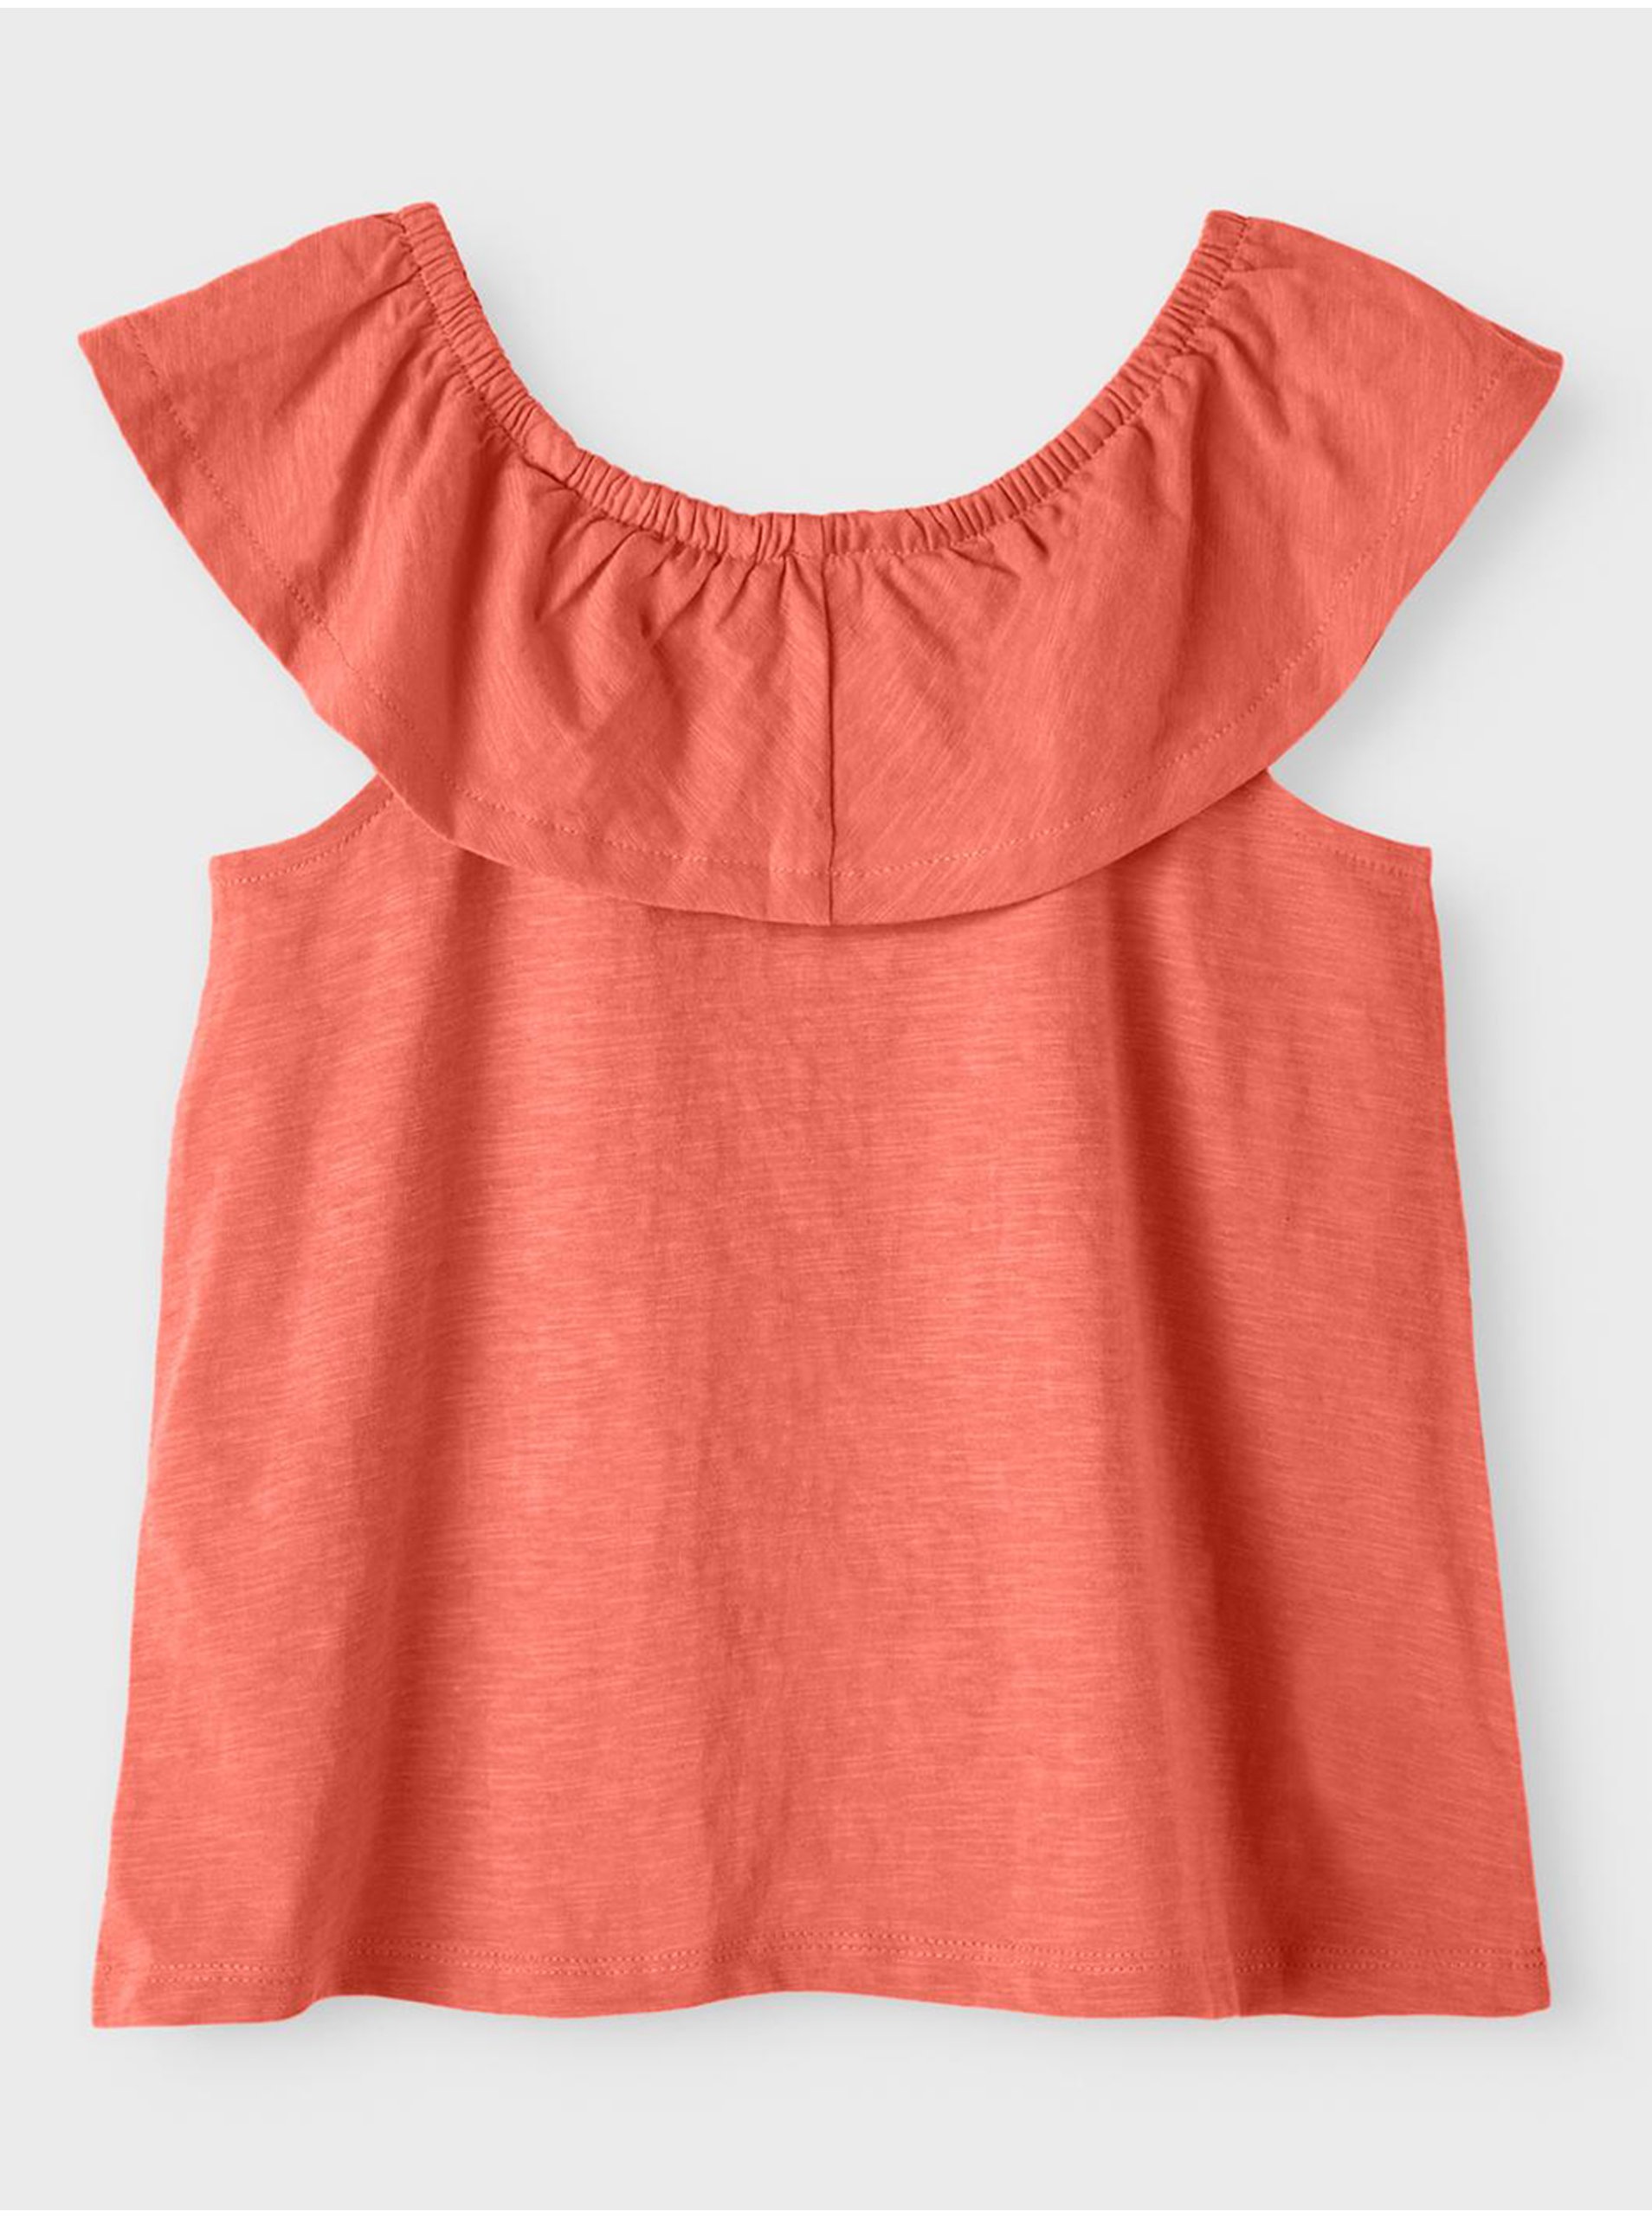 E-shop Koralové dievčenské tričko name it Verita